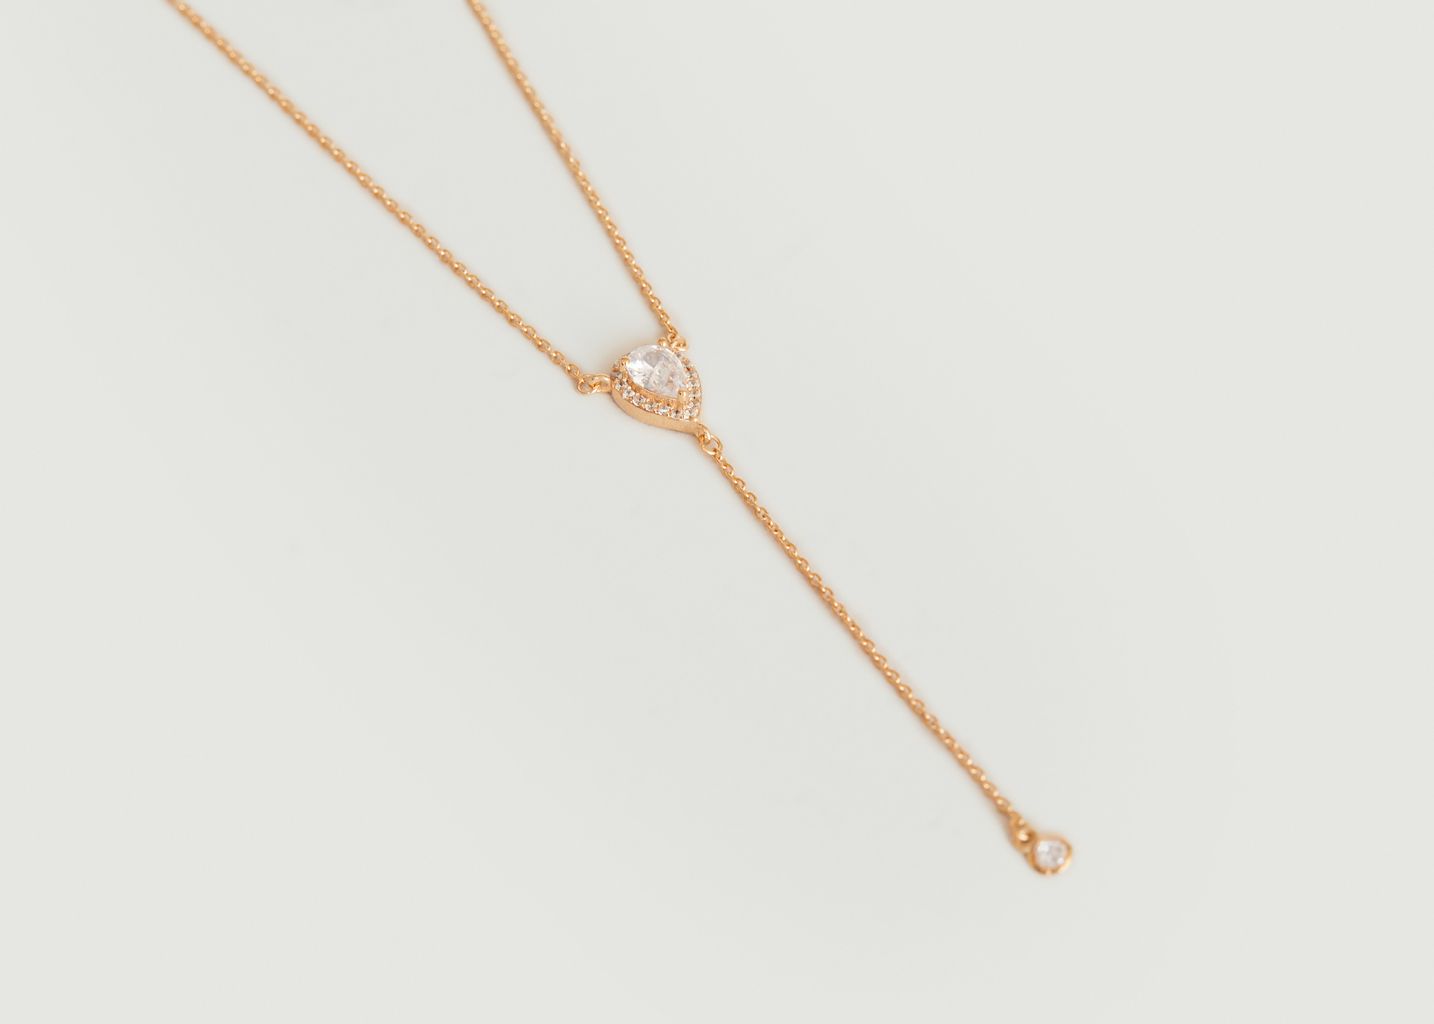 Andaman necklace - Anäu